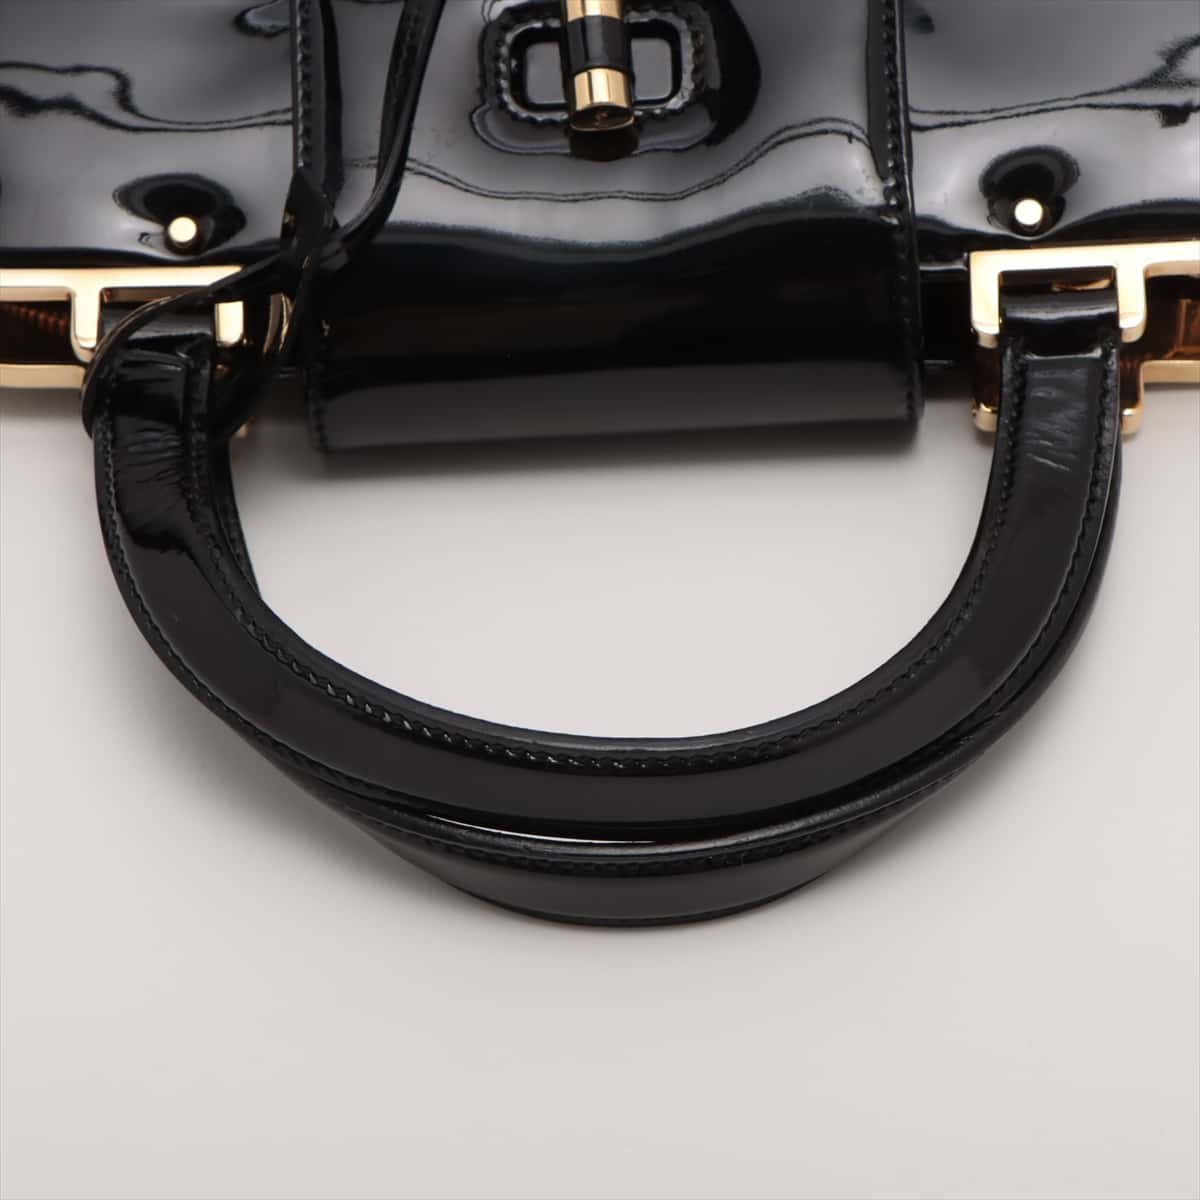 Saint Laurent Paris Patent leather Hand bag Black 181024